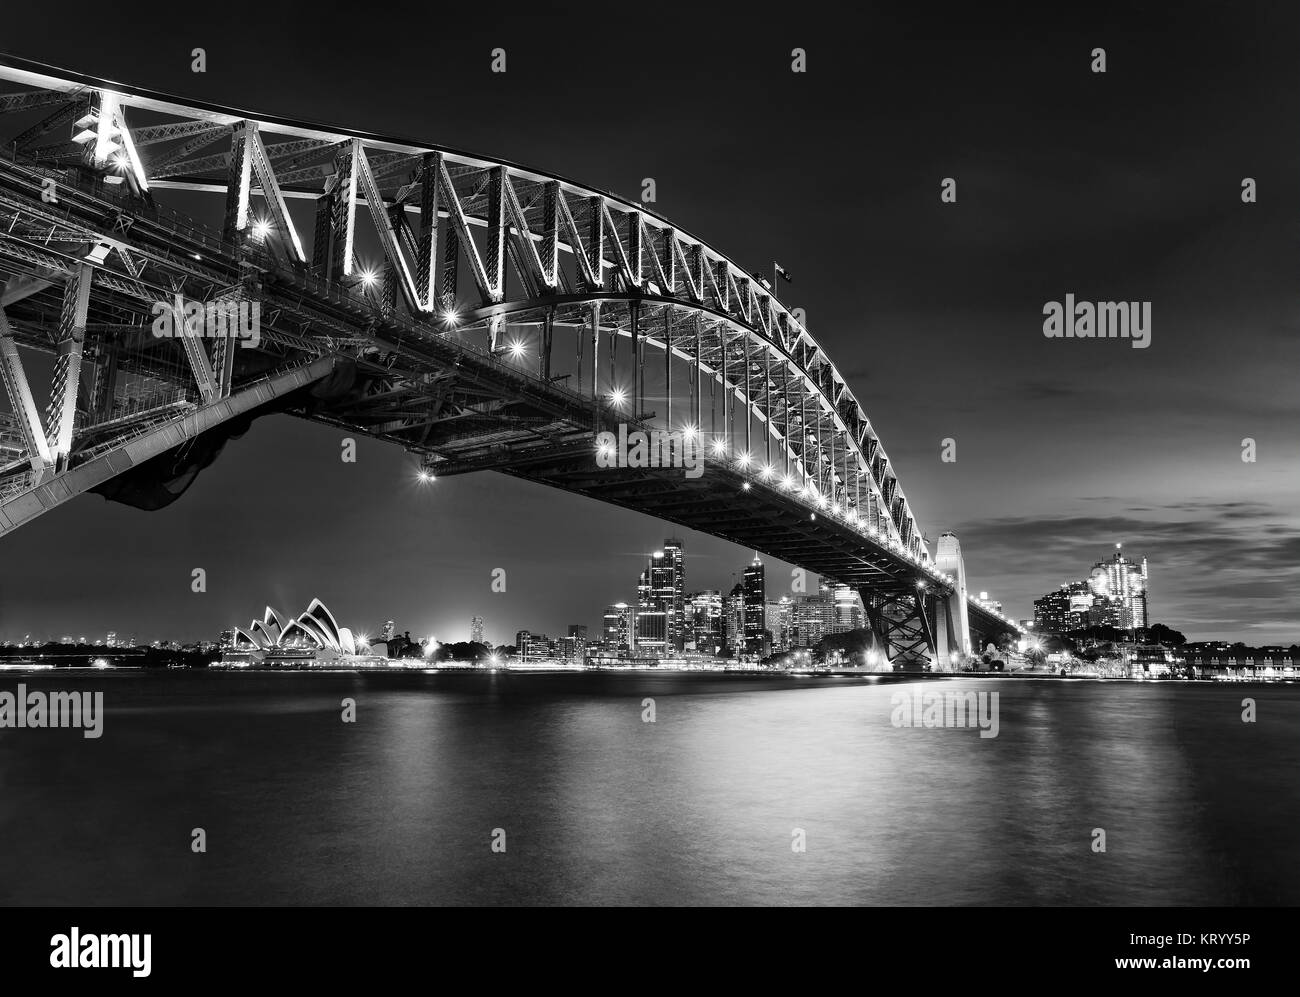 Schwarz-weiße Seite Blick auf die Sydney Harbour Bridge in Richtung Innenstadt, The Rocks und Circular Quay bei Sonnenuntergang über verschwommenes reflektierende Hafen Wasser. Brücke Stockfoto